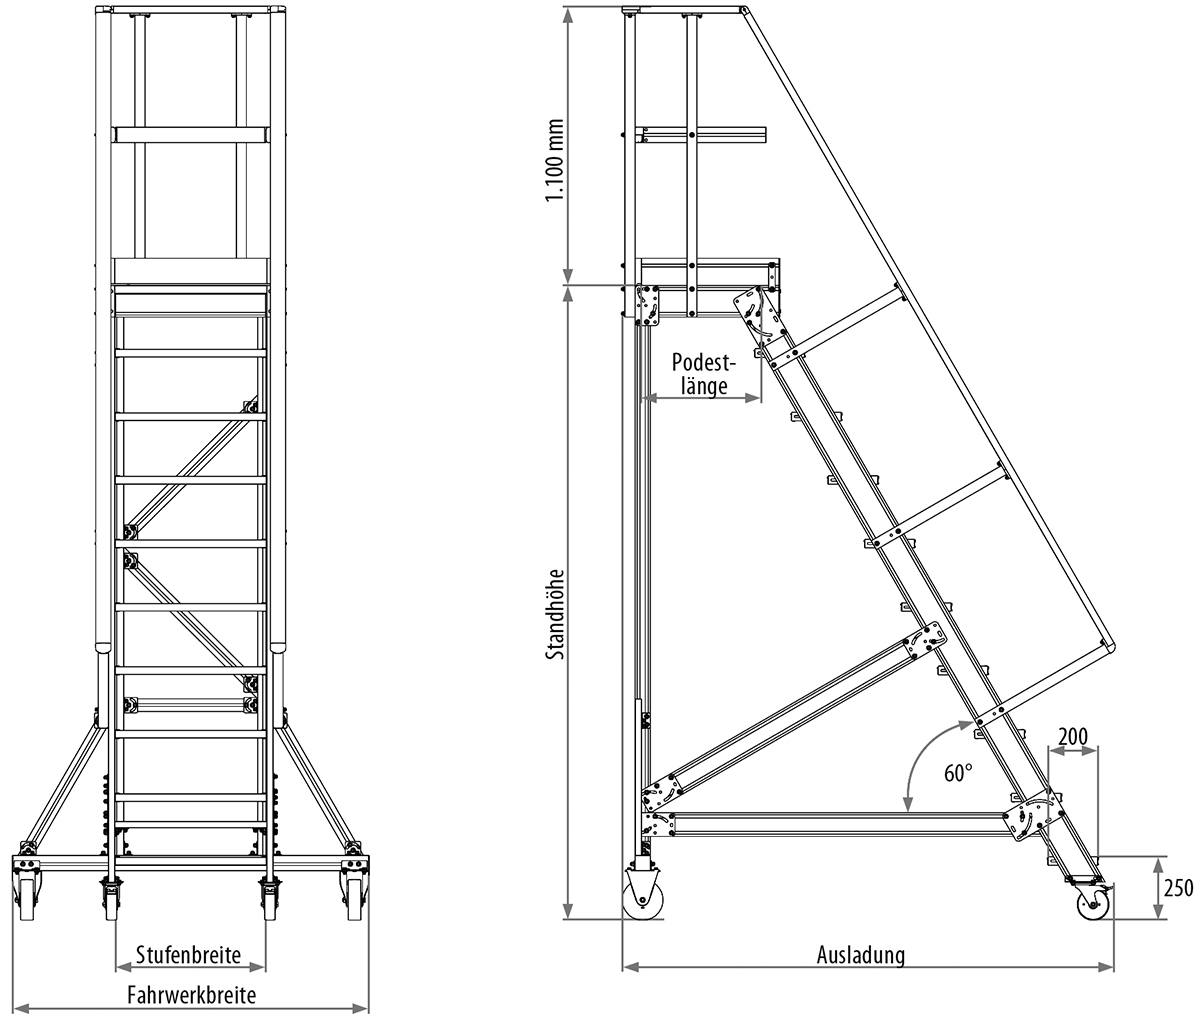 Podesttreppe fahrbar, Treppenneigung 60°, Stufenbreite 1000 mm - 5 Stufen